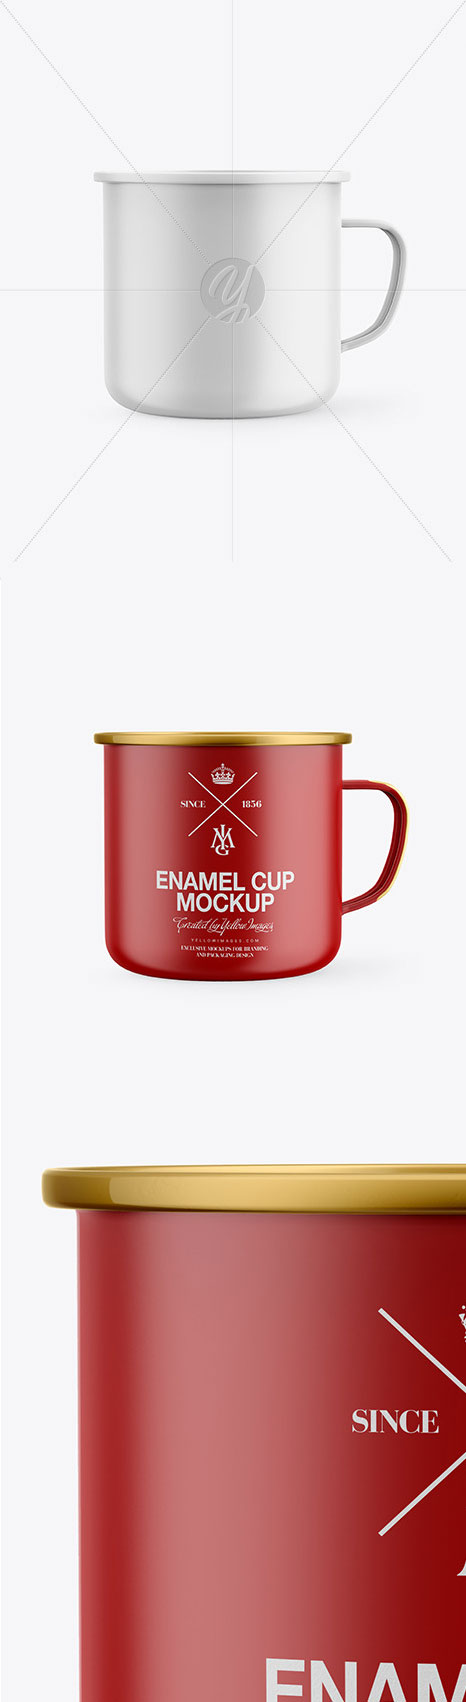 Matte Enamel Cup Mockup 46471